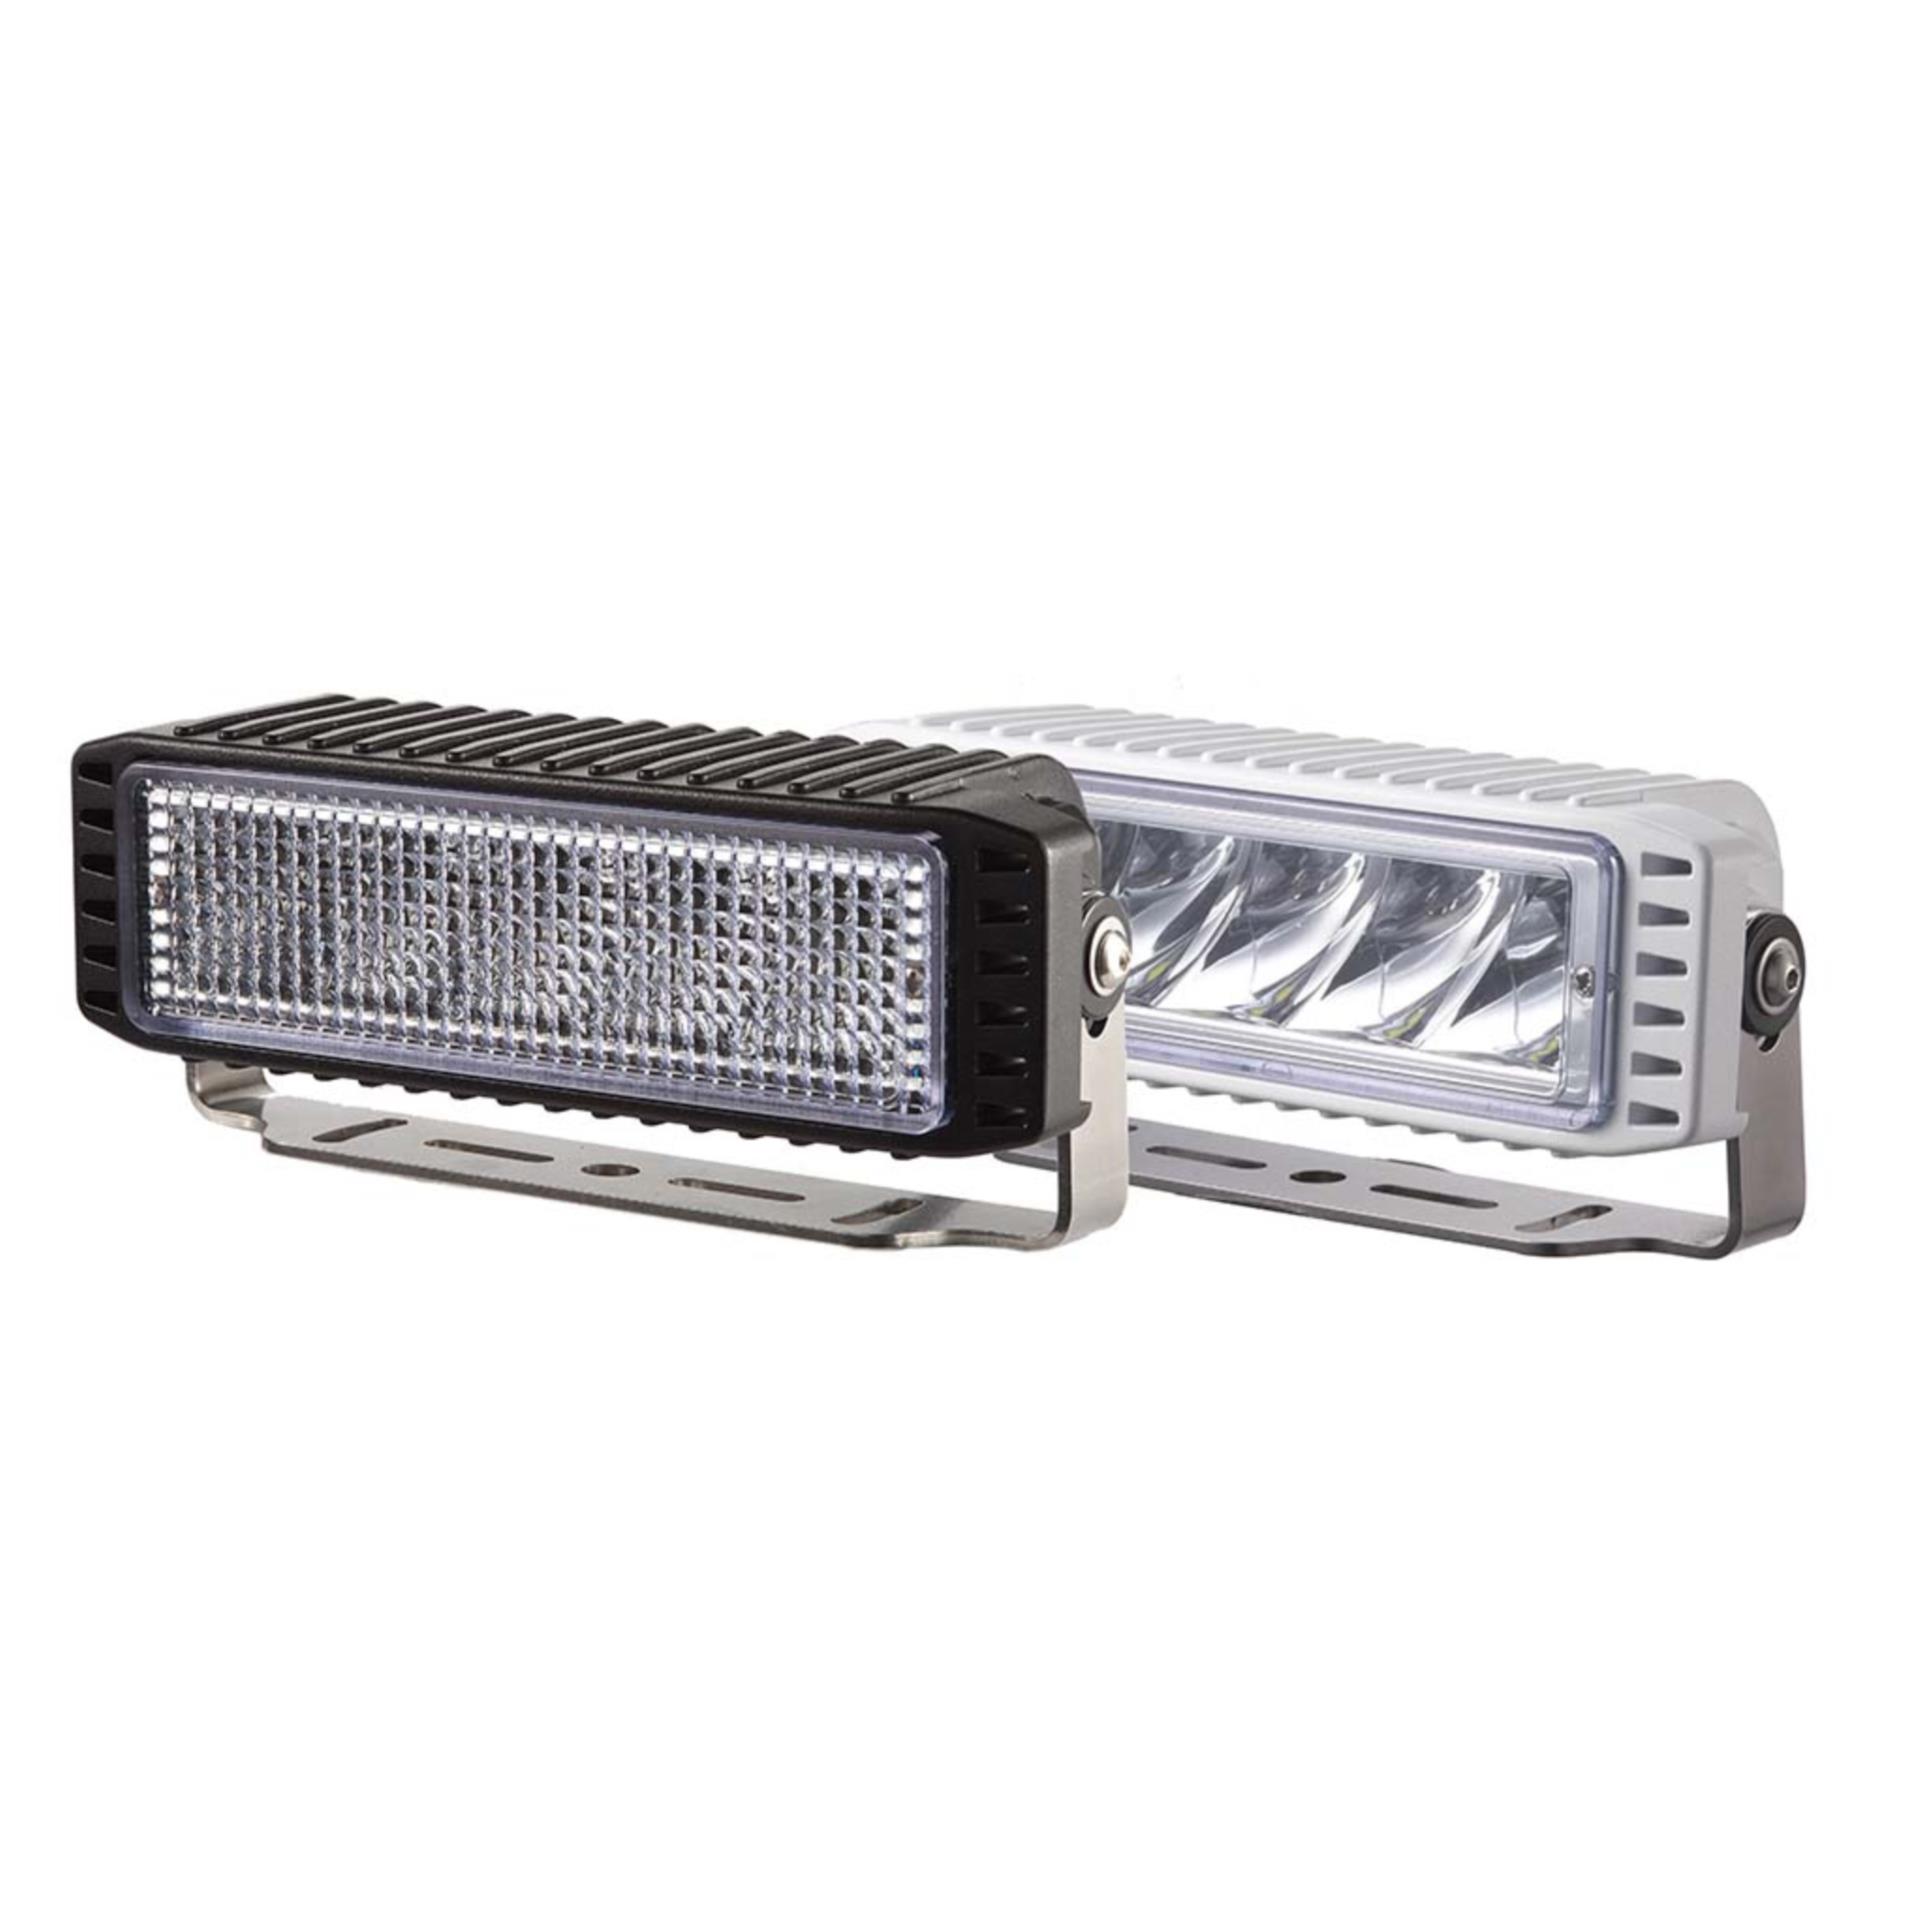 LED Decksstrahler Flutlicht WL1102, schwarz